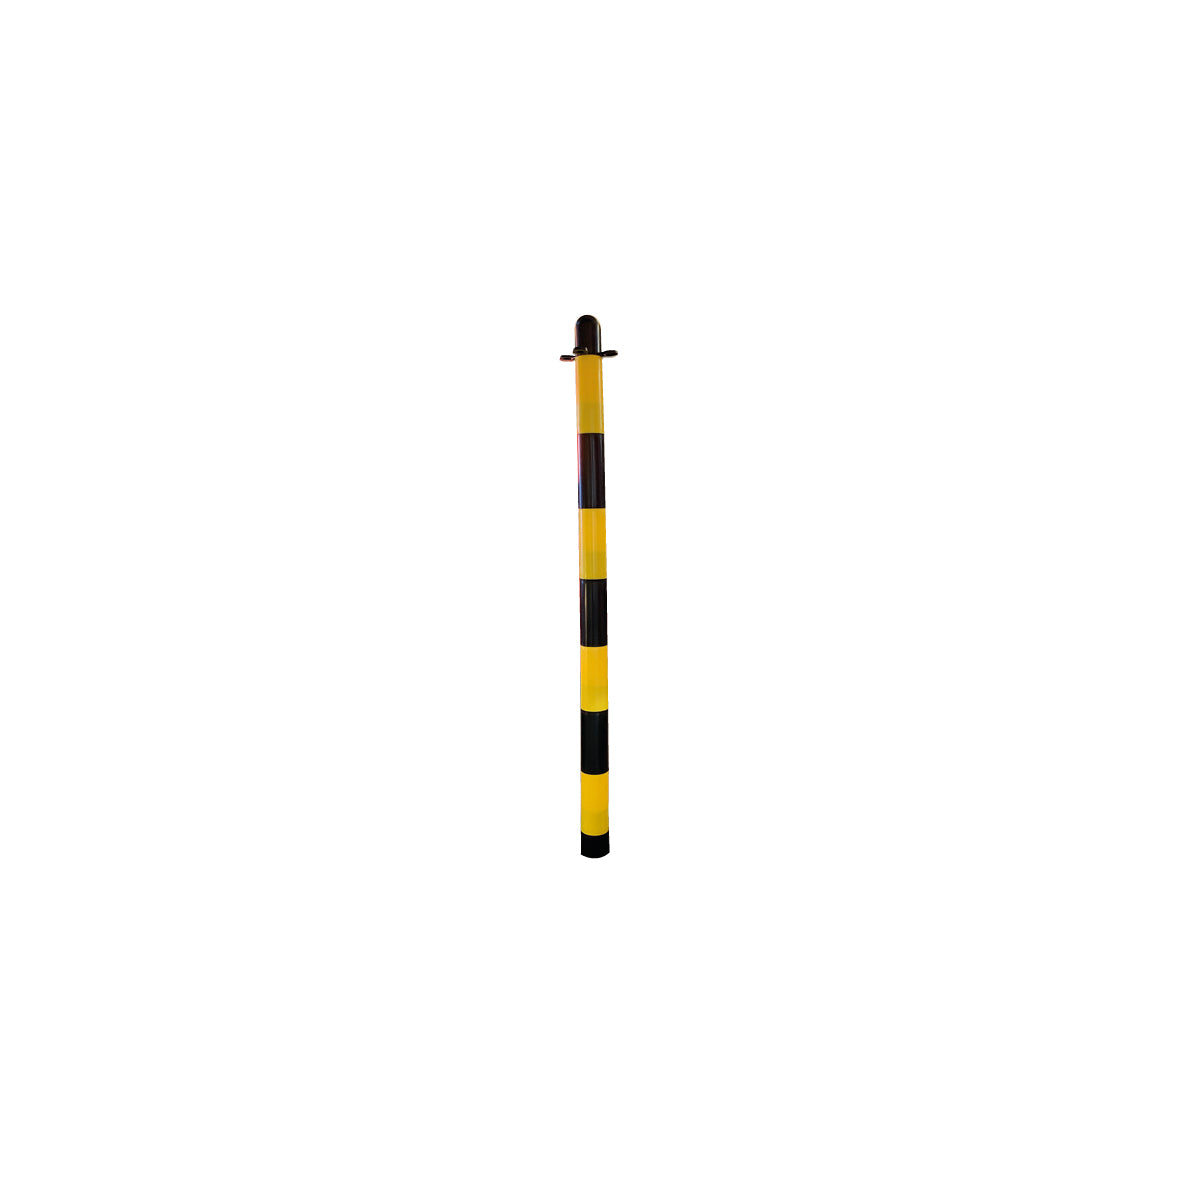 Kunststoffpfosten Zubehör, gelb-schwarz, 90 cm